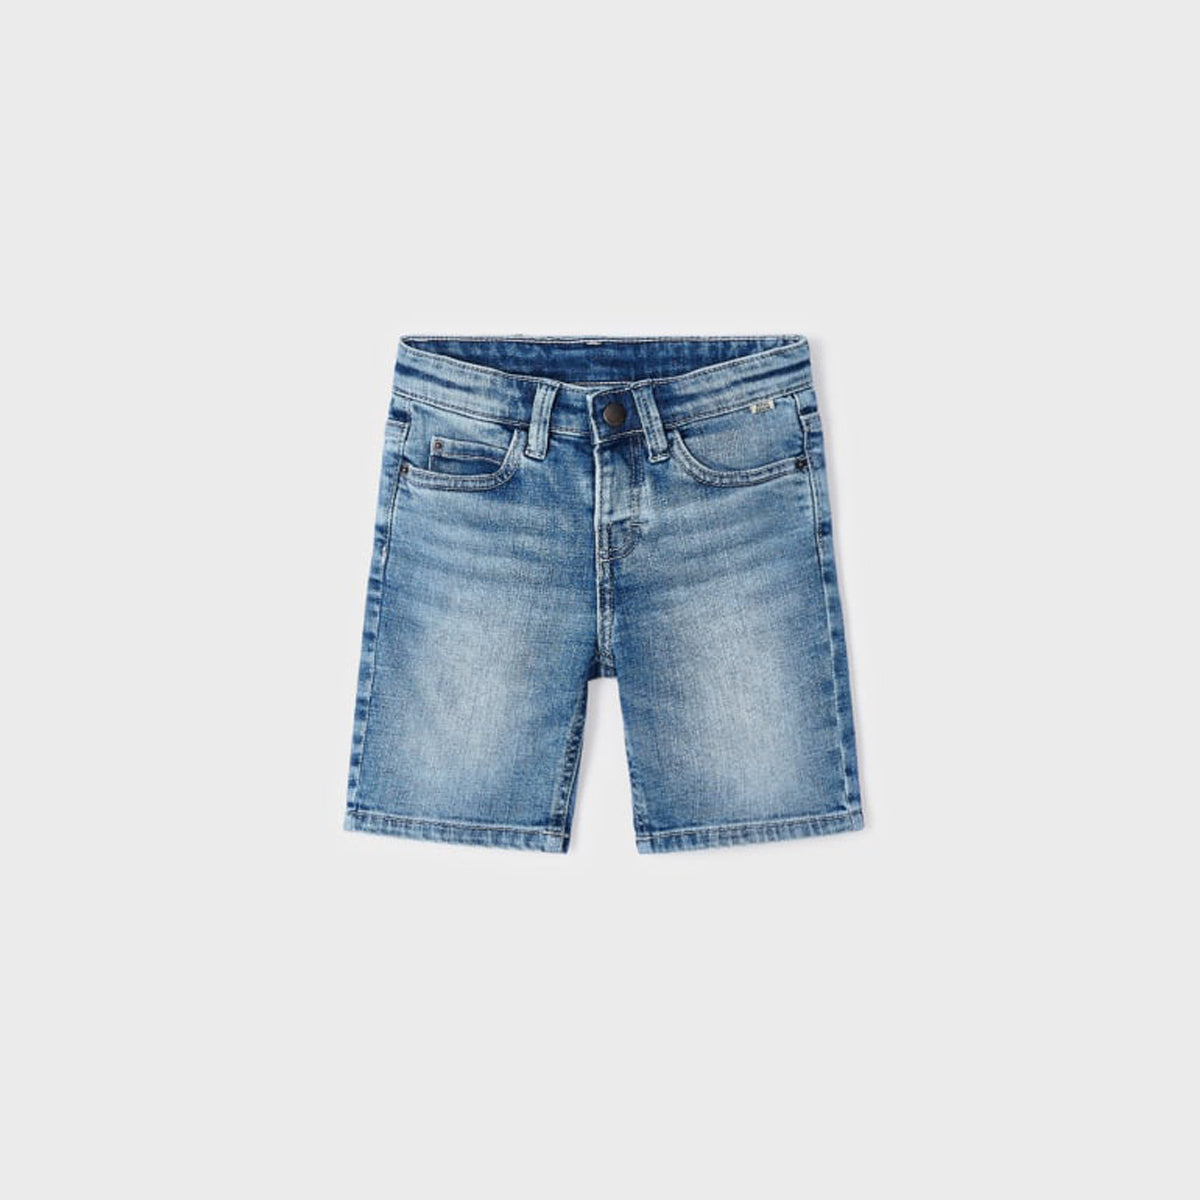 Medium Denim Basic Shorts